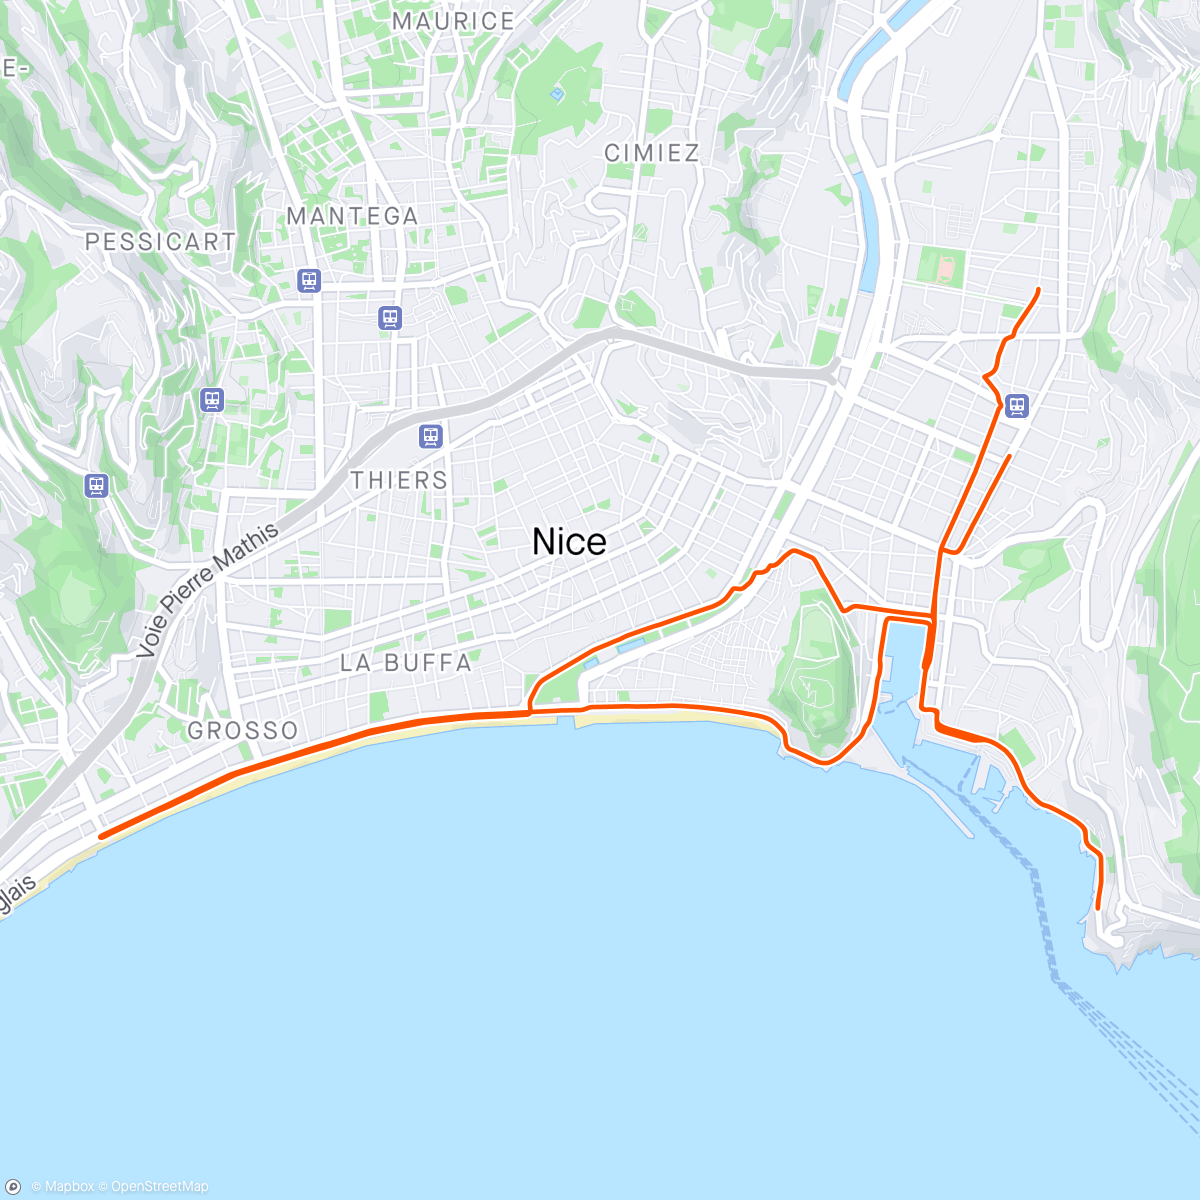 Map of the activity, Café du cycliste macchiato run